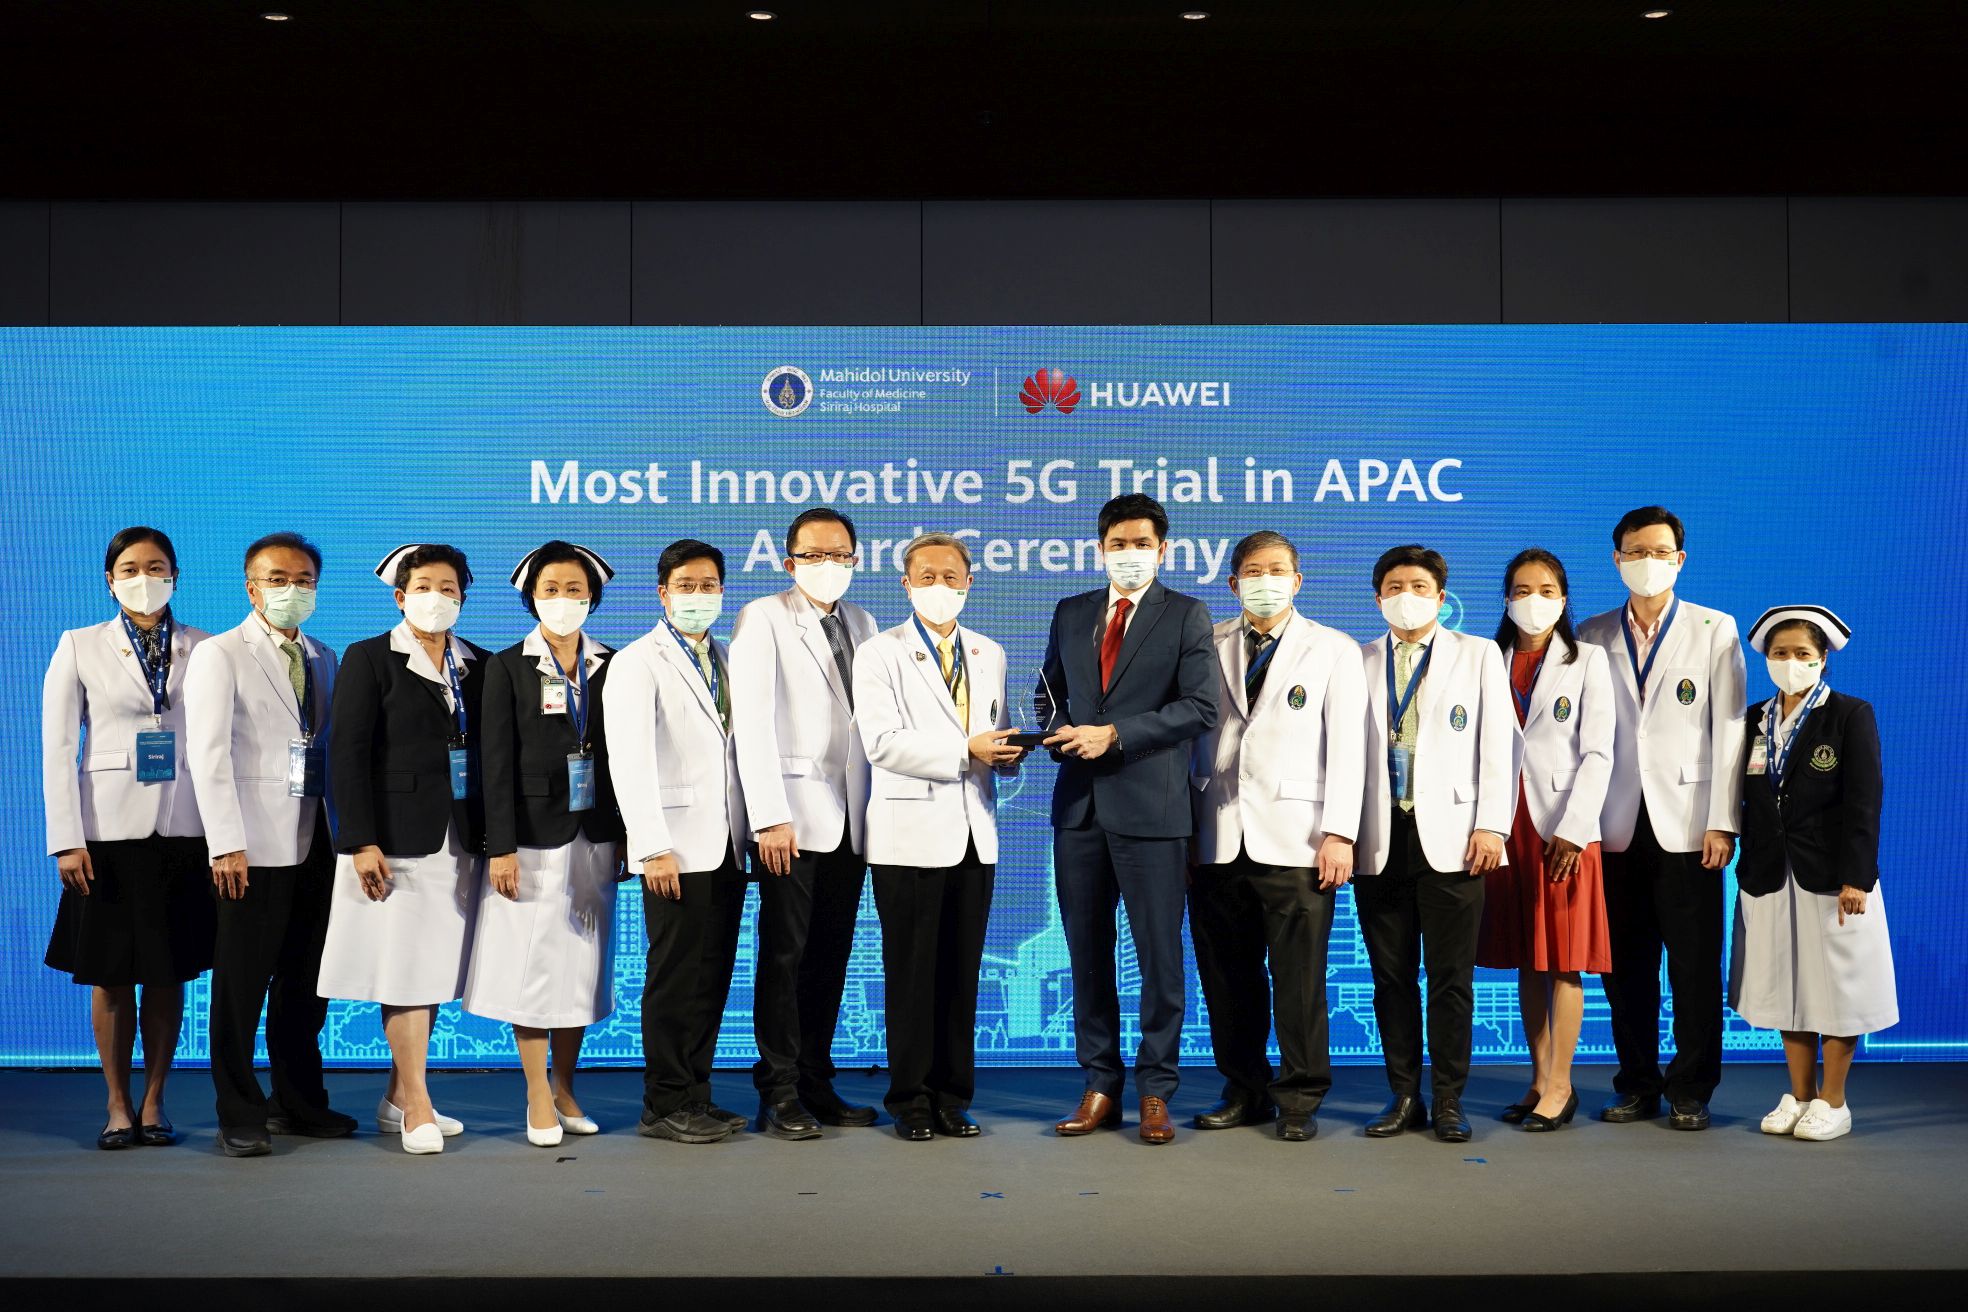 ศิริราชคว้ารางวัลอันทรงเกียรติ จากโครงการ โรงพยาบาลอัจฉริยะ 5G ที่ปลอดภัยและเชื่อถือได้ ในประเทศไทย